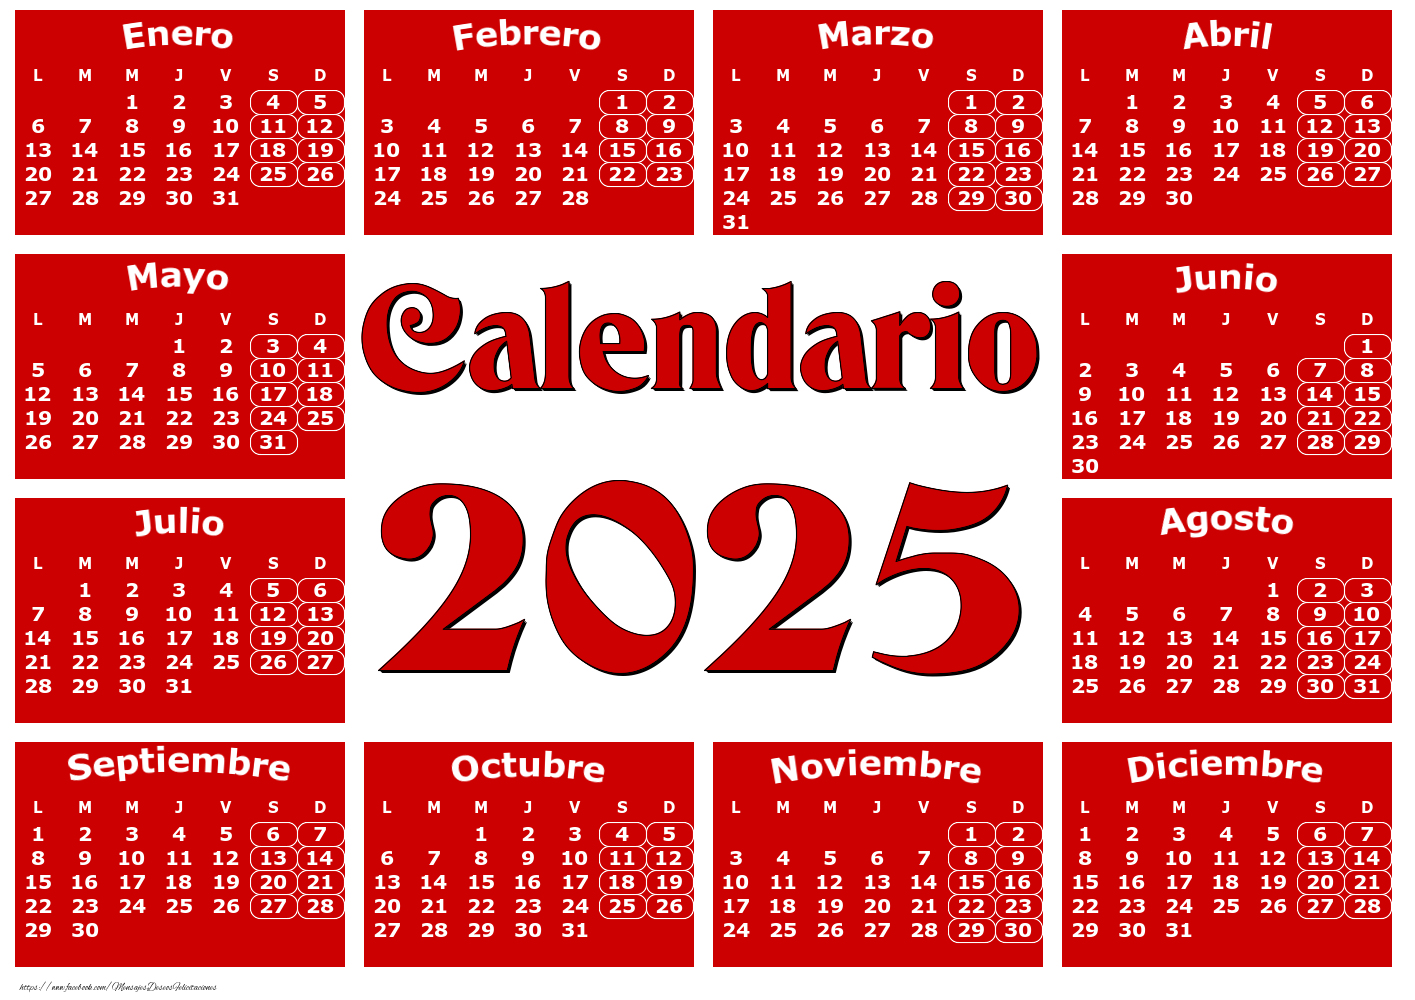 Felicitaciones calendarios - Calendario 2025 - Rojo clásico - Modelo 0020 - mensajesdeseosfelicitaciones.com